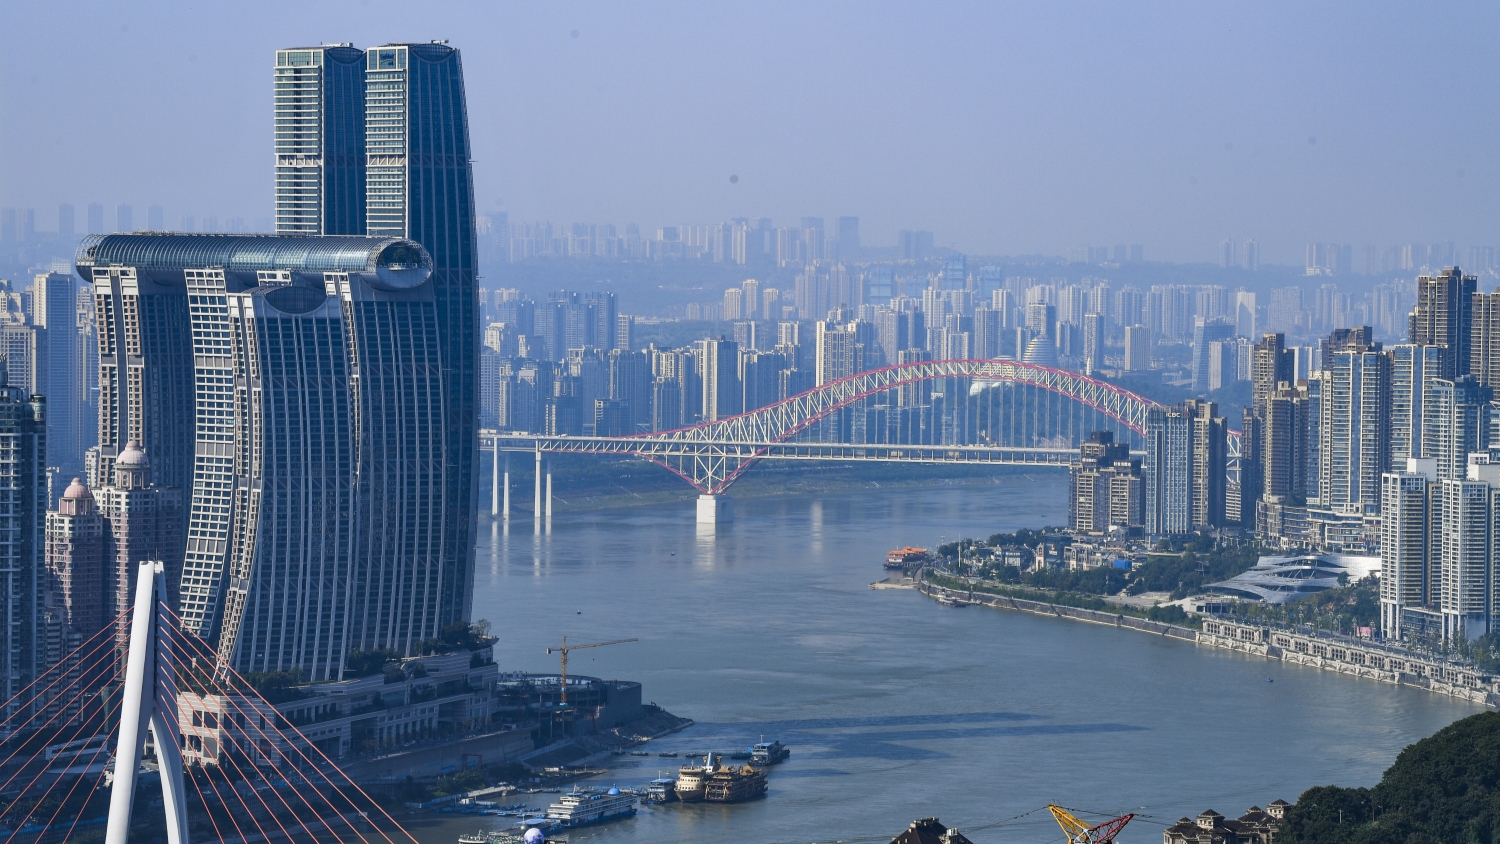 舞動「長江經濟帶」 添彩「美麗中國」 長江沿線稅務部門服務長江經濟帶高質量發展